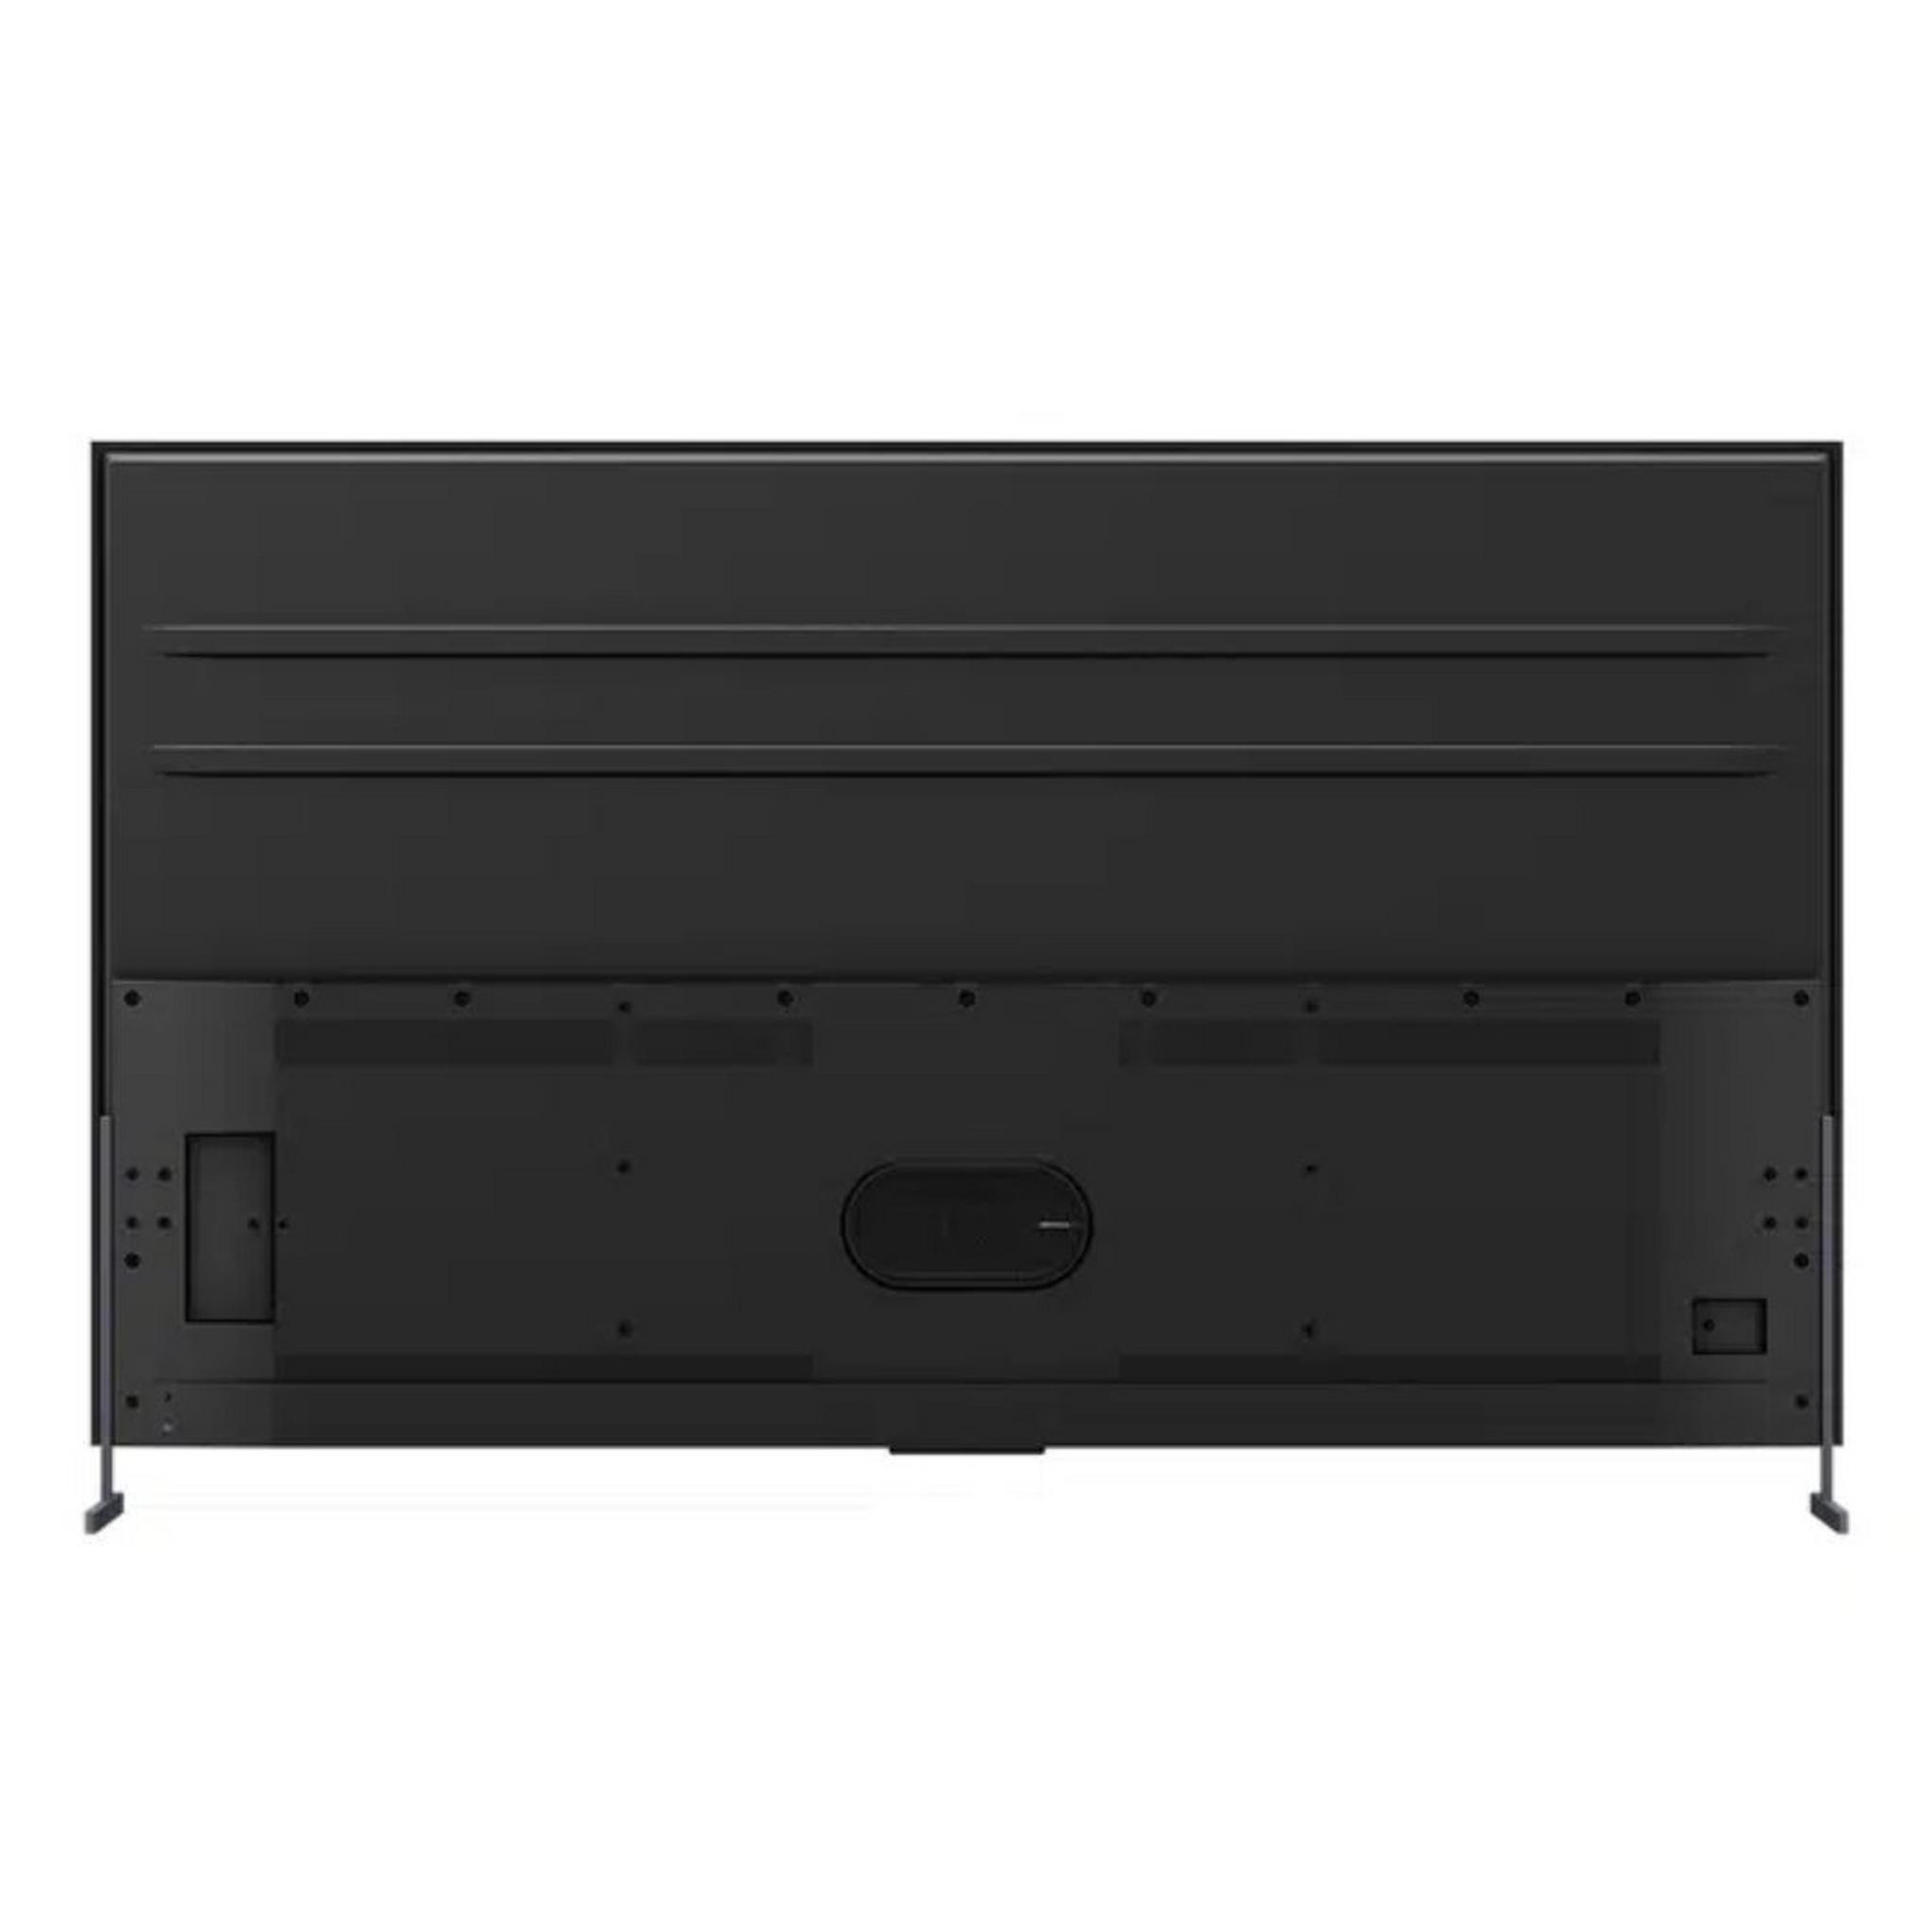 TCL C735 98-inch QLED Smart Google TV, 120 HZ - Black